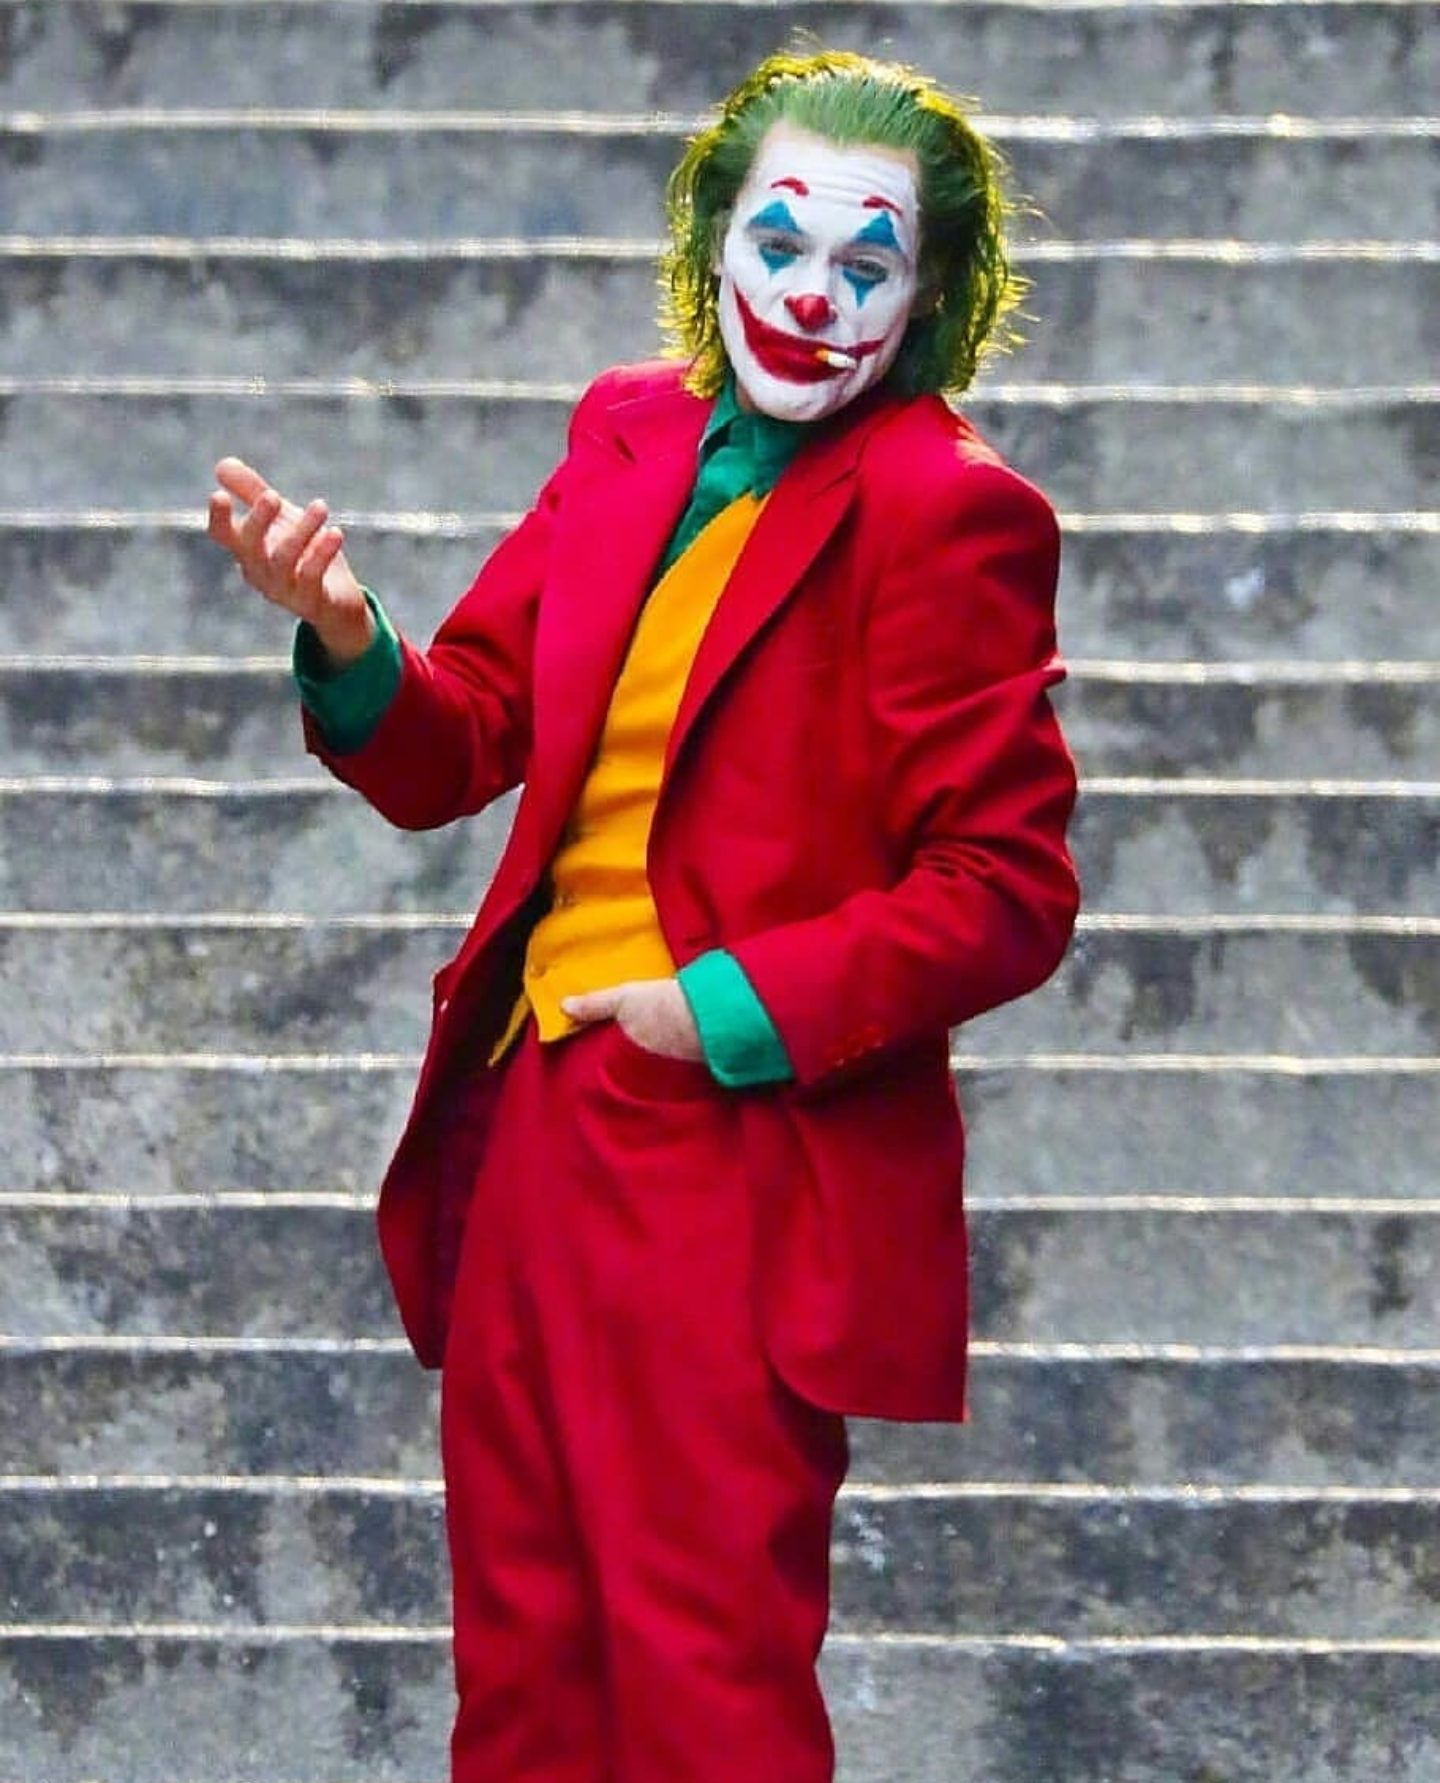  16 Joaquin  Phoenix  Joker  Wallpapers  on WallpaperSafari